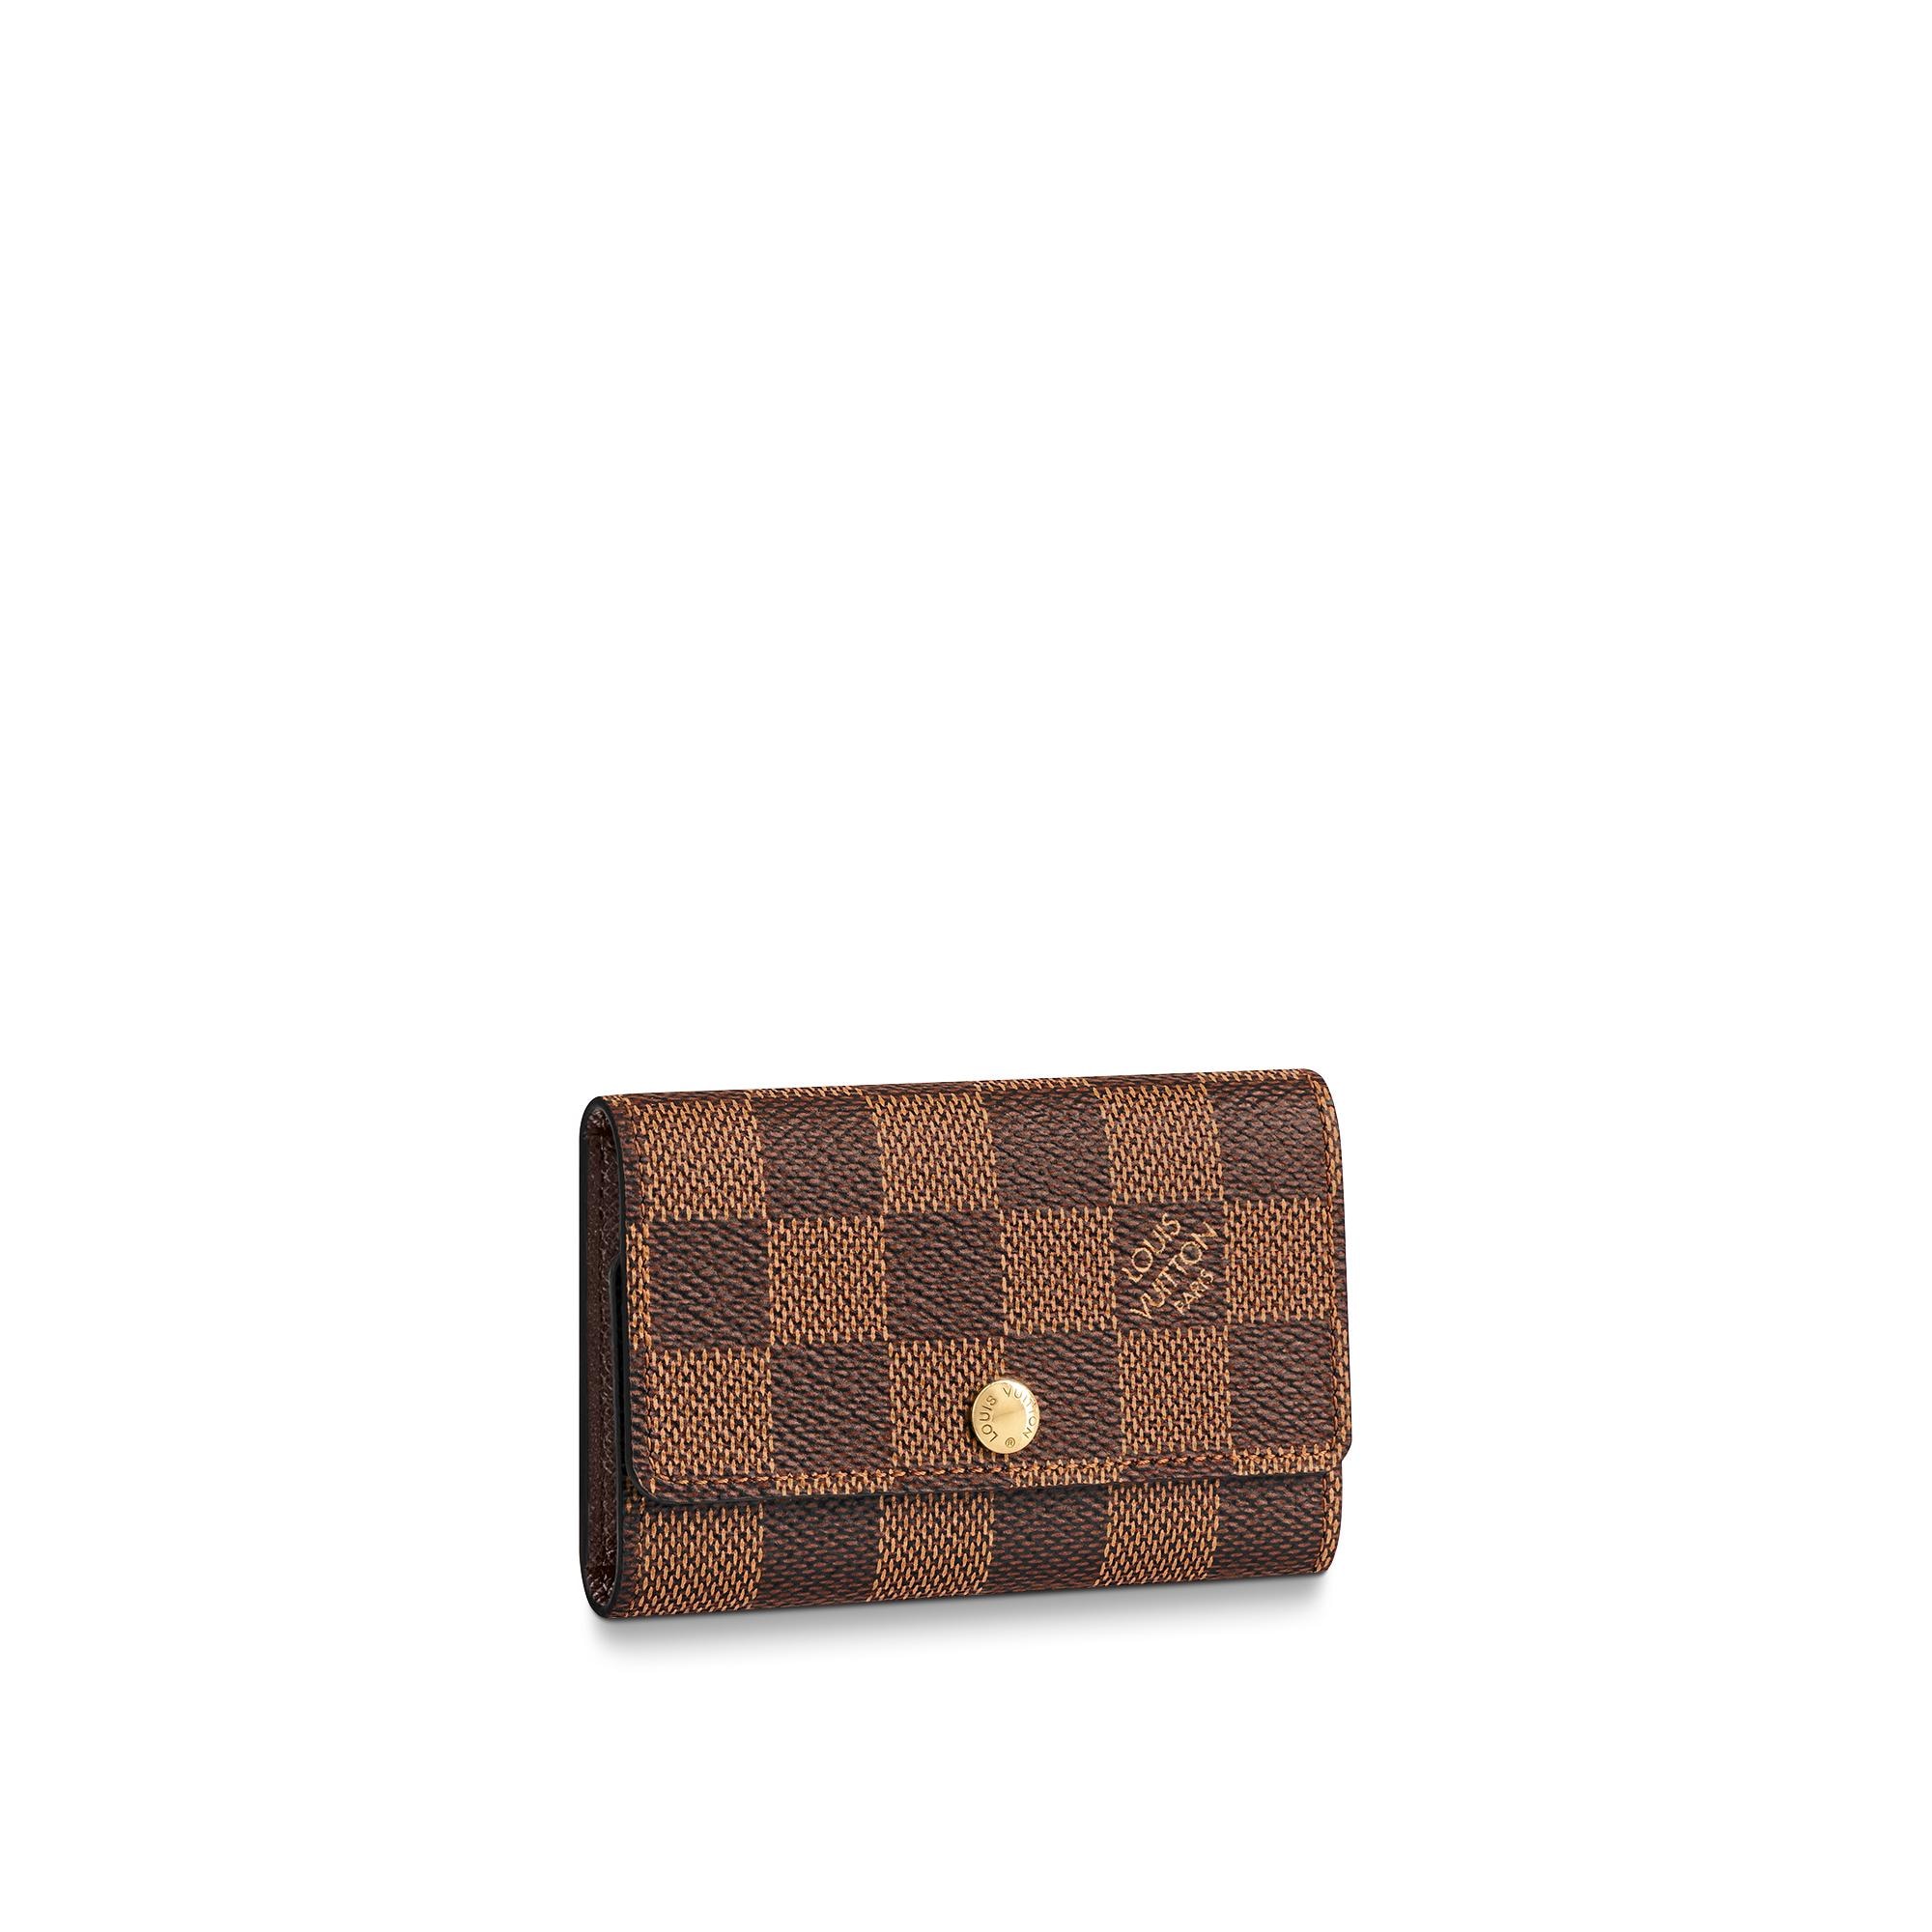 Louis Vuitton 6 Key Holder – Men – Small Leather Goods N62630 Damier Ebene